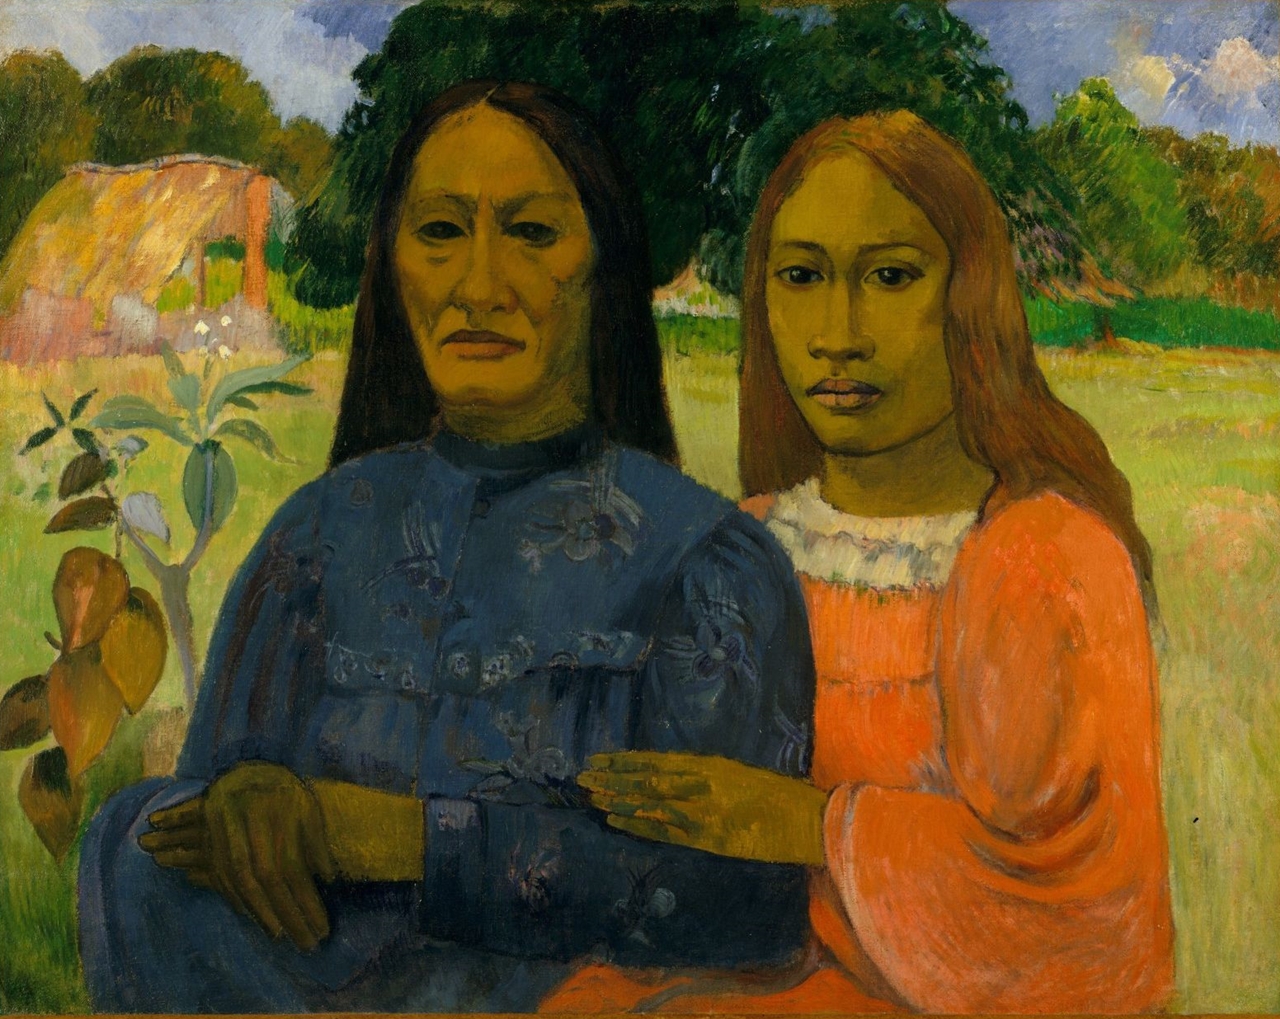 Paul+Gauguin-1848-1903 (407).jpg